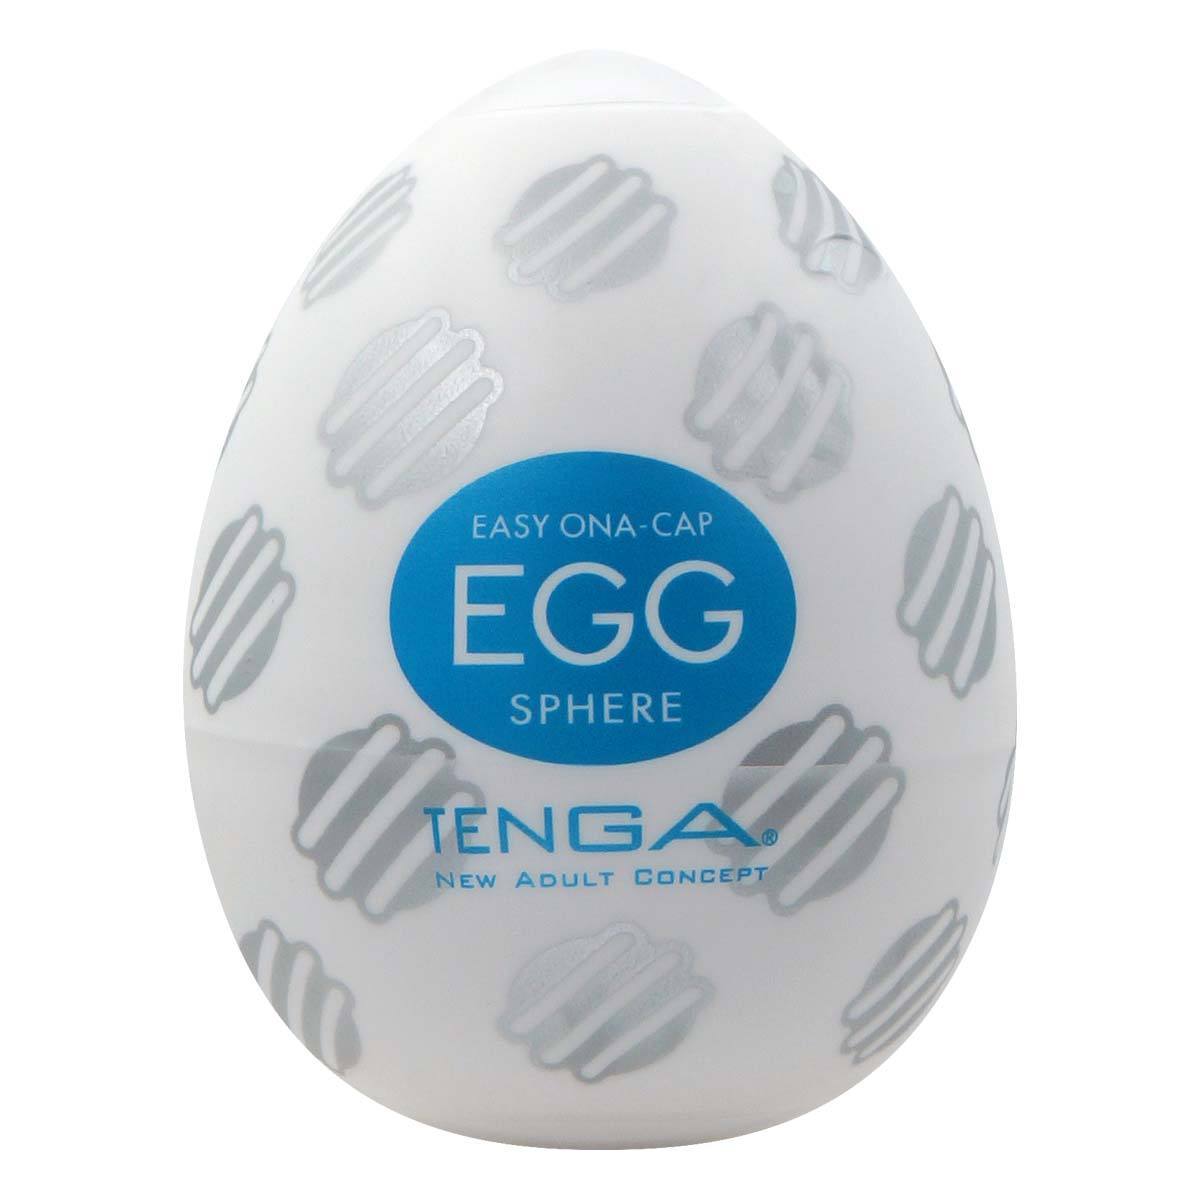 TENGA Egg Sphere 迴旋飛機蛋 飛機蛋 購買